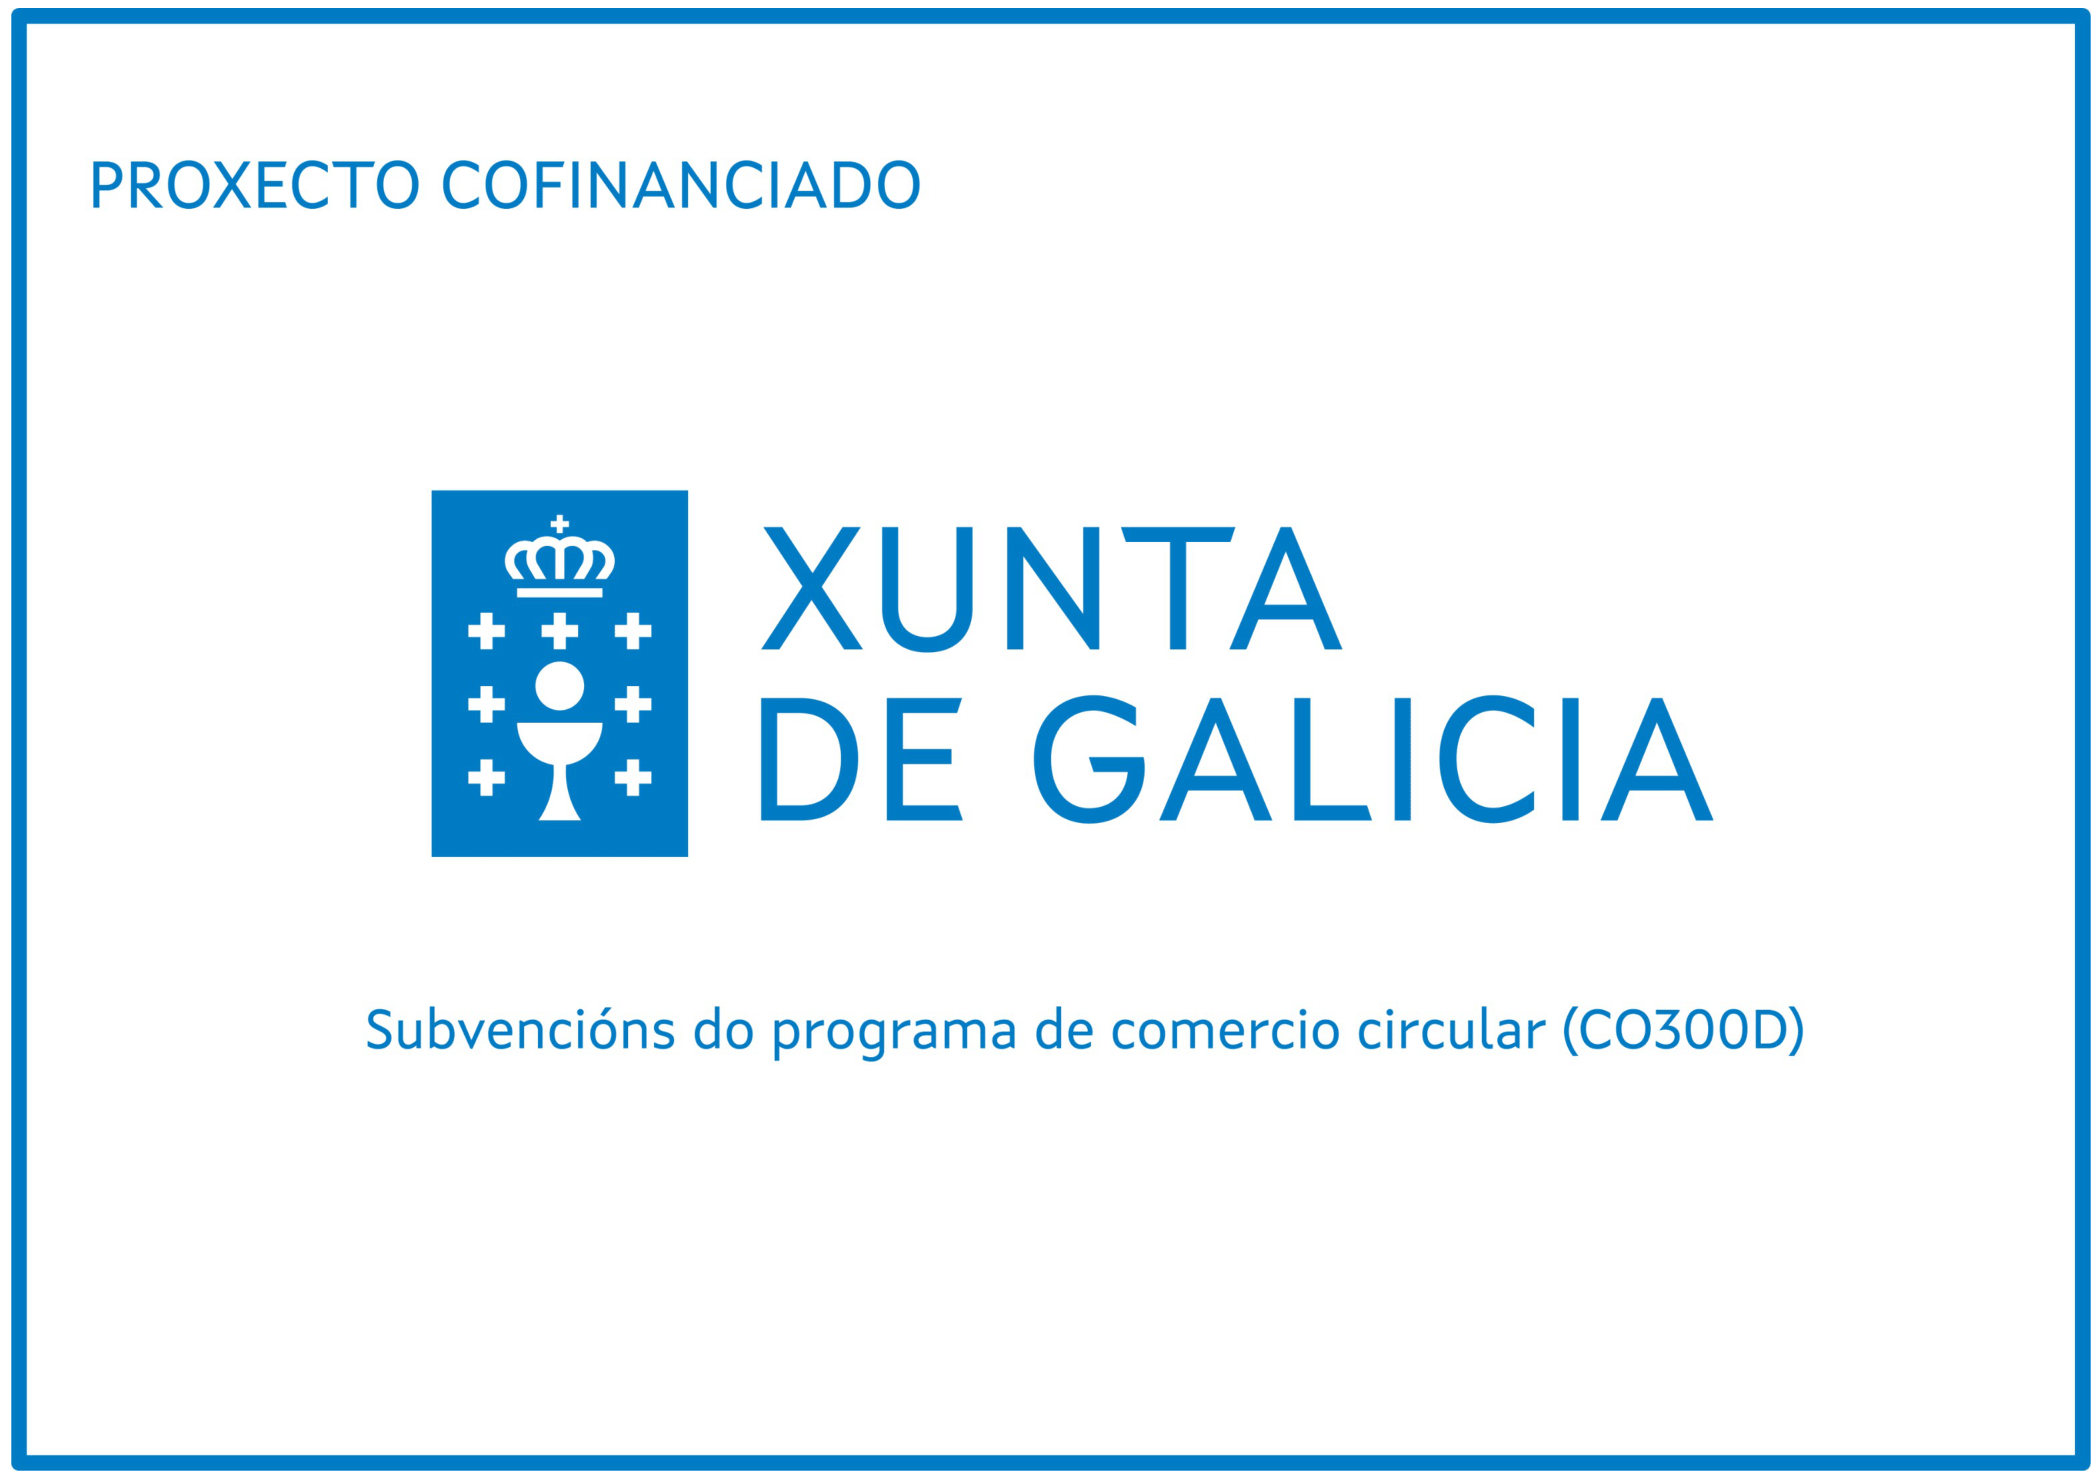 Programa de comercio circular da Xunta